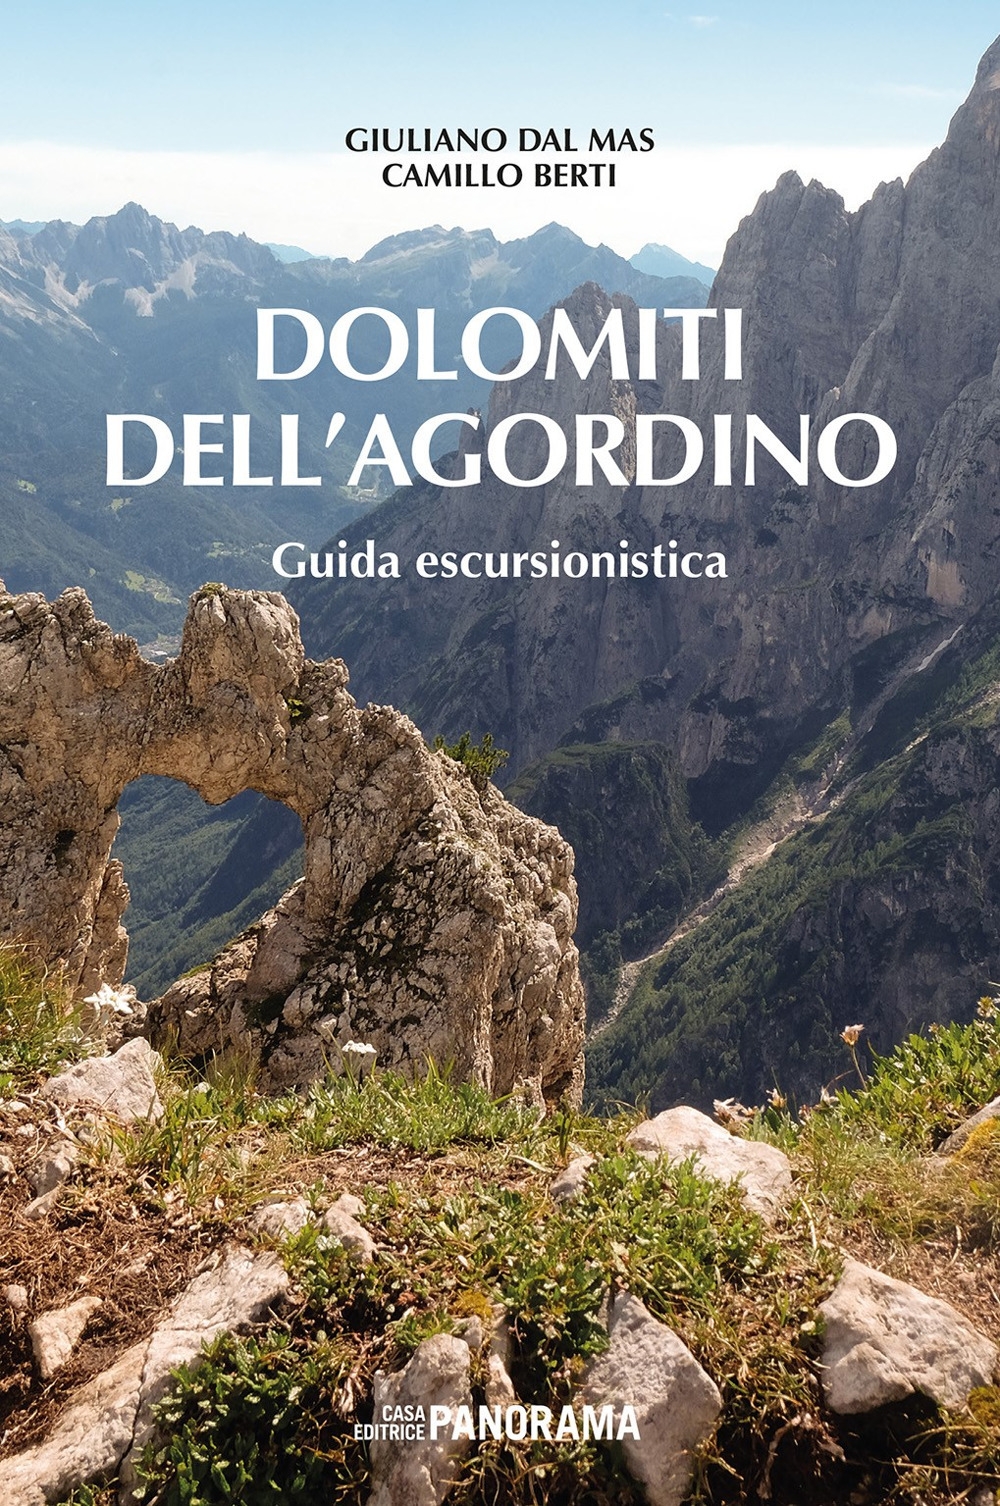 Libri Dal Mas Giuliano / Camillo Berti - Dolomiti Dell'agordino. Guida Escursionistica. Nuova Ediz. NUOVO SIGILLATO, EDIZIONE DEL 07/06/2018 SUBITO DISPONIBILE